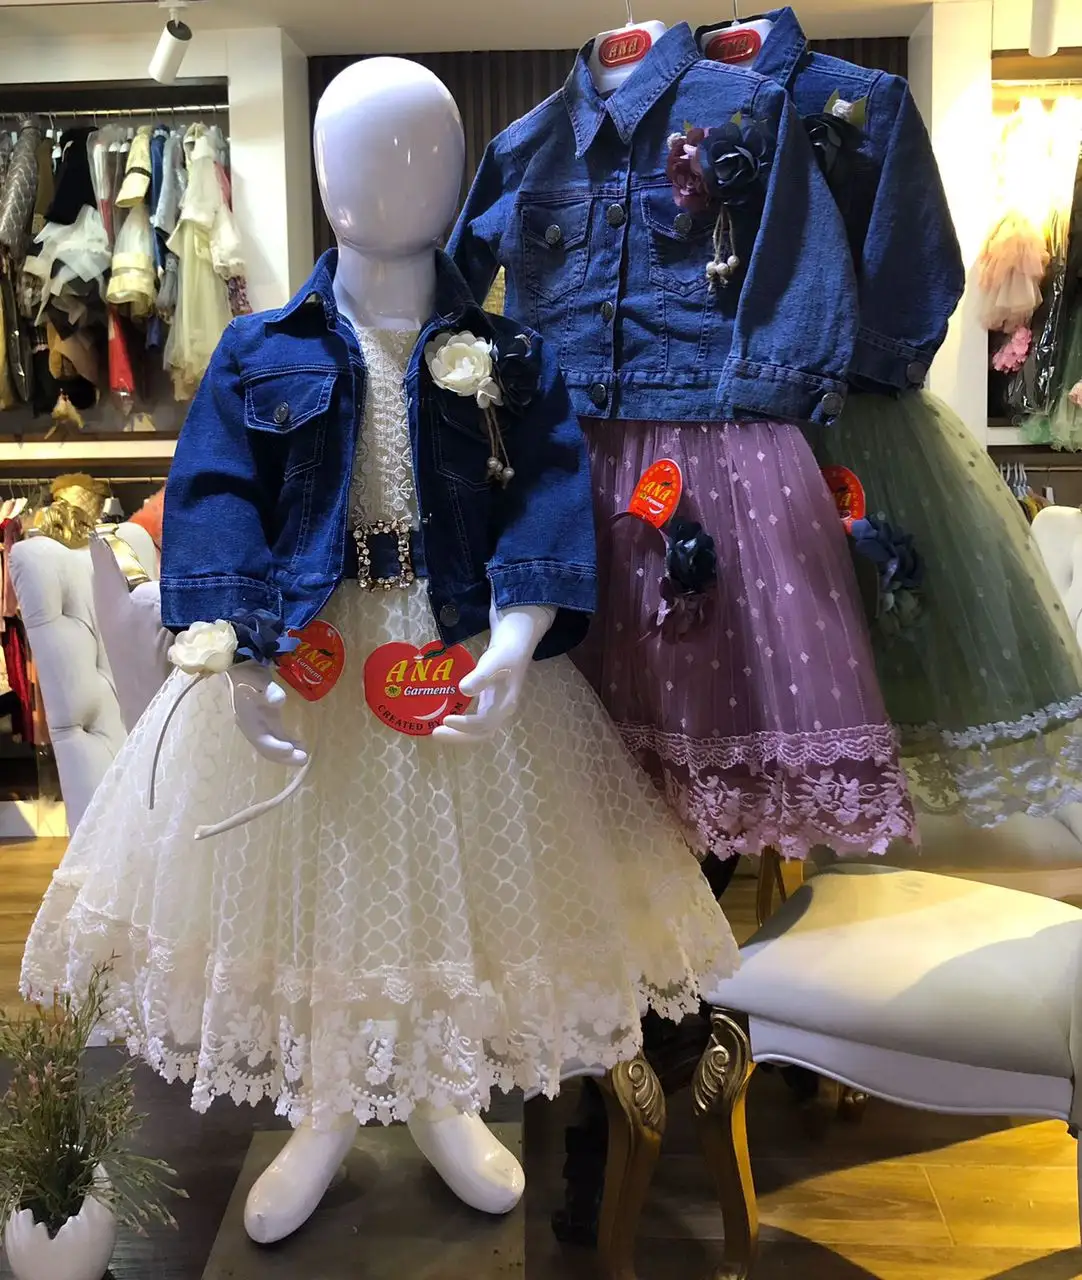 الدنيم ملابس فوقية لطفلة جديد فستان مظلة تصميم مع هيرباند أحدث مجموعة من حزب ارتداء